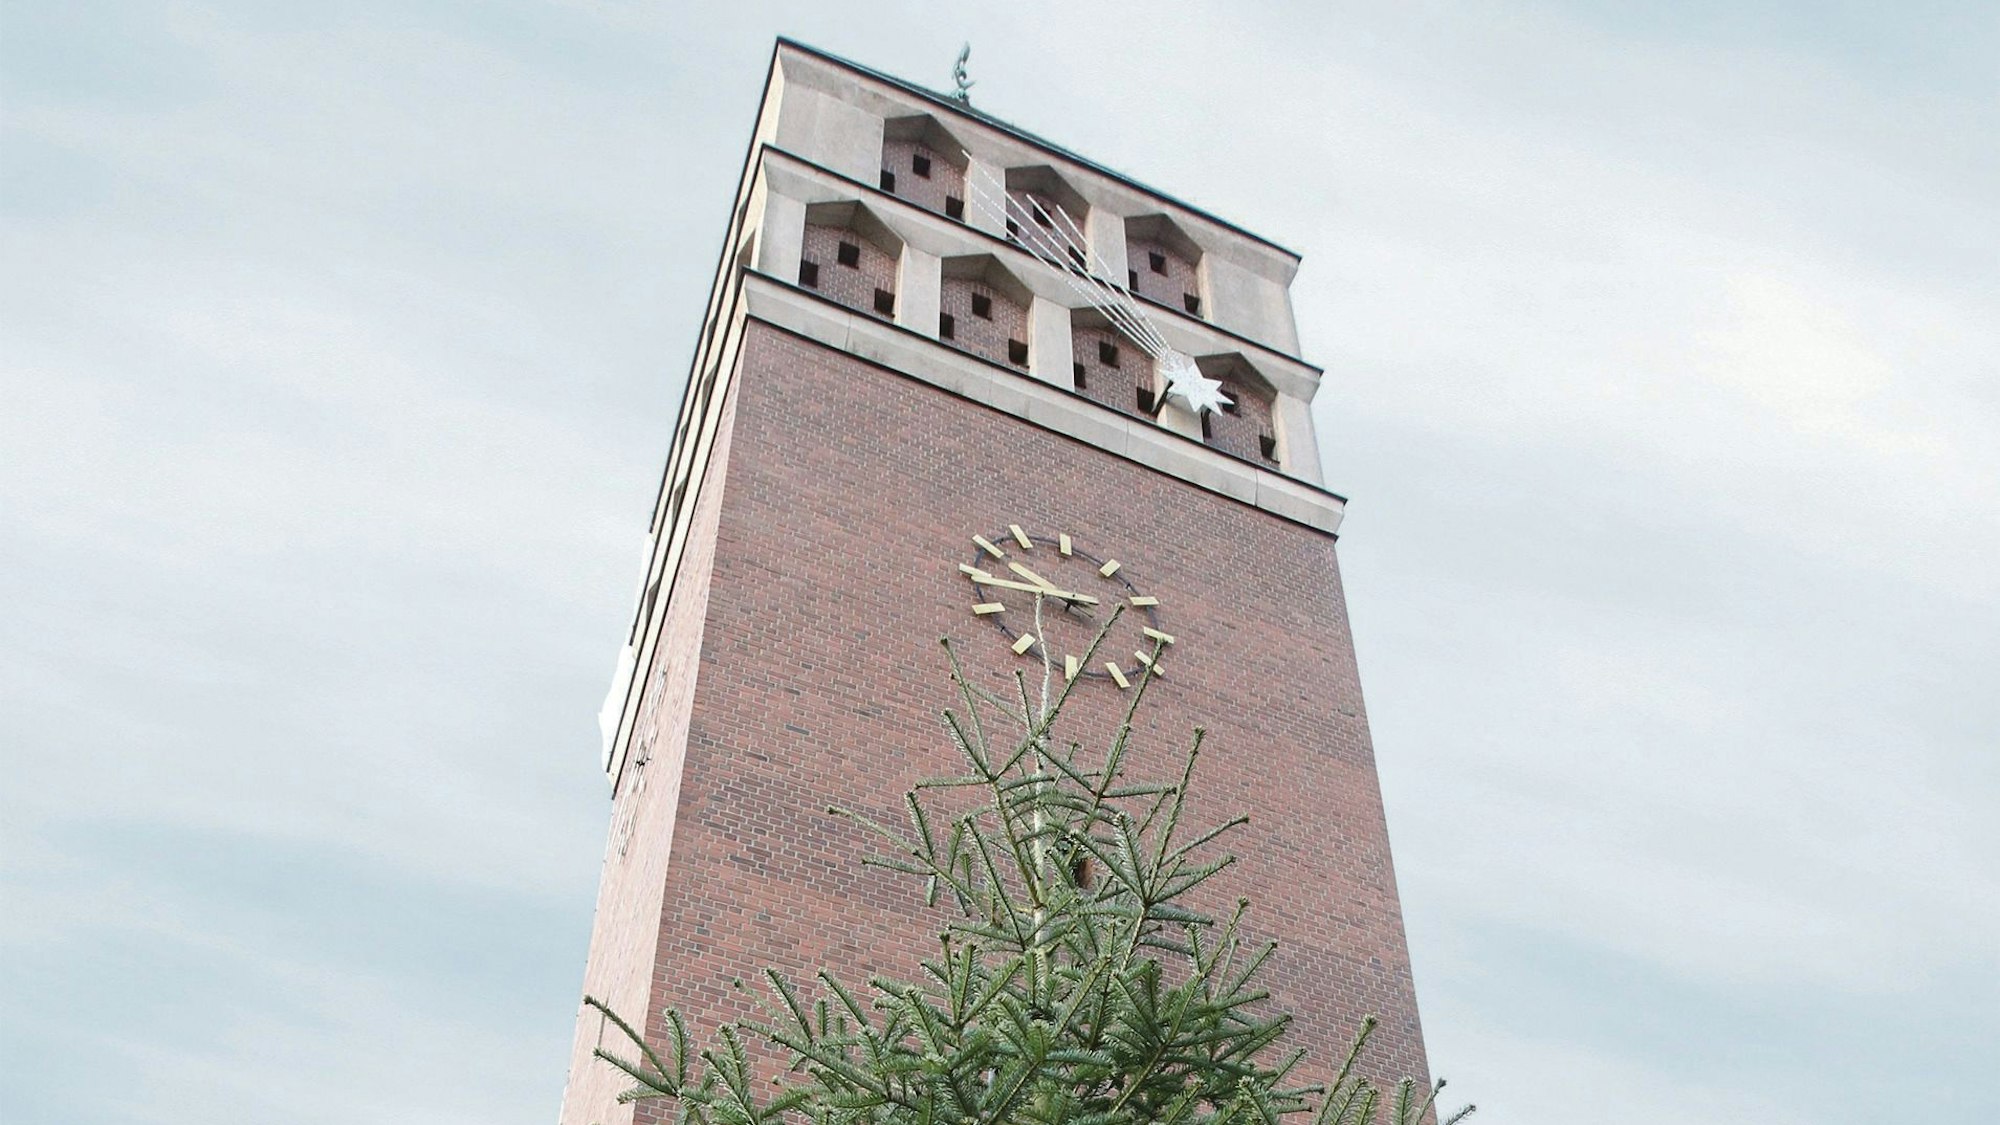 Der Kirchturm der Pfarrkirche St. Hippolytus in Troisdorf mit einem Weihnachtsbaum davor.